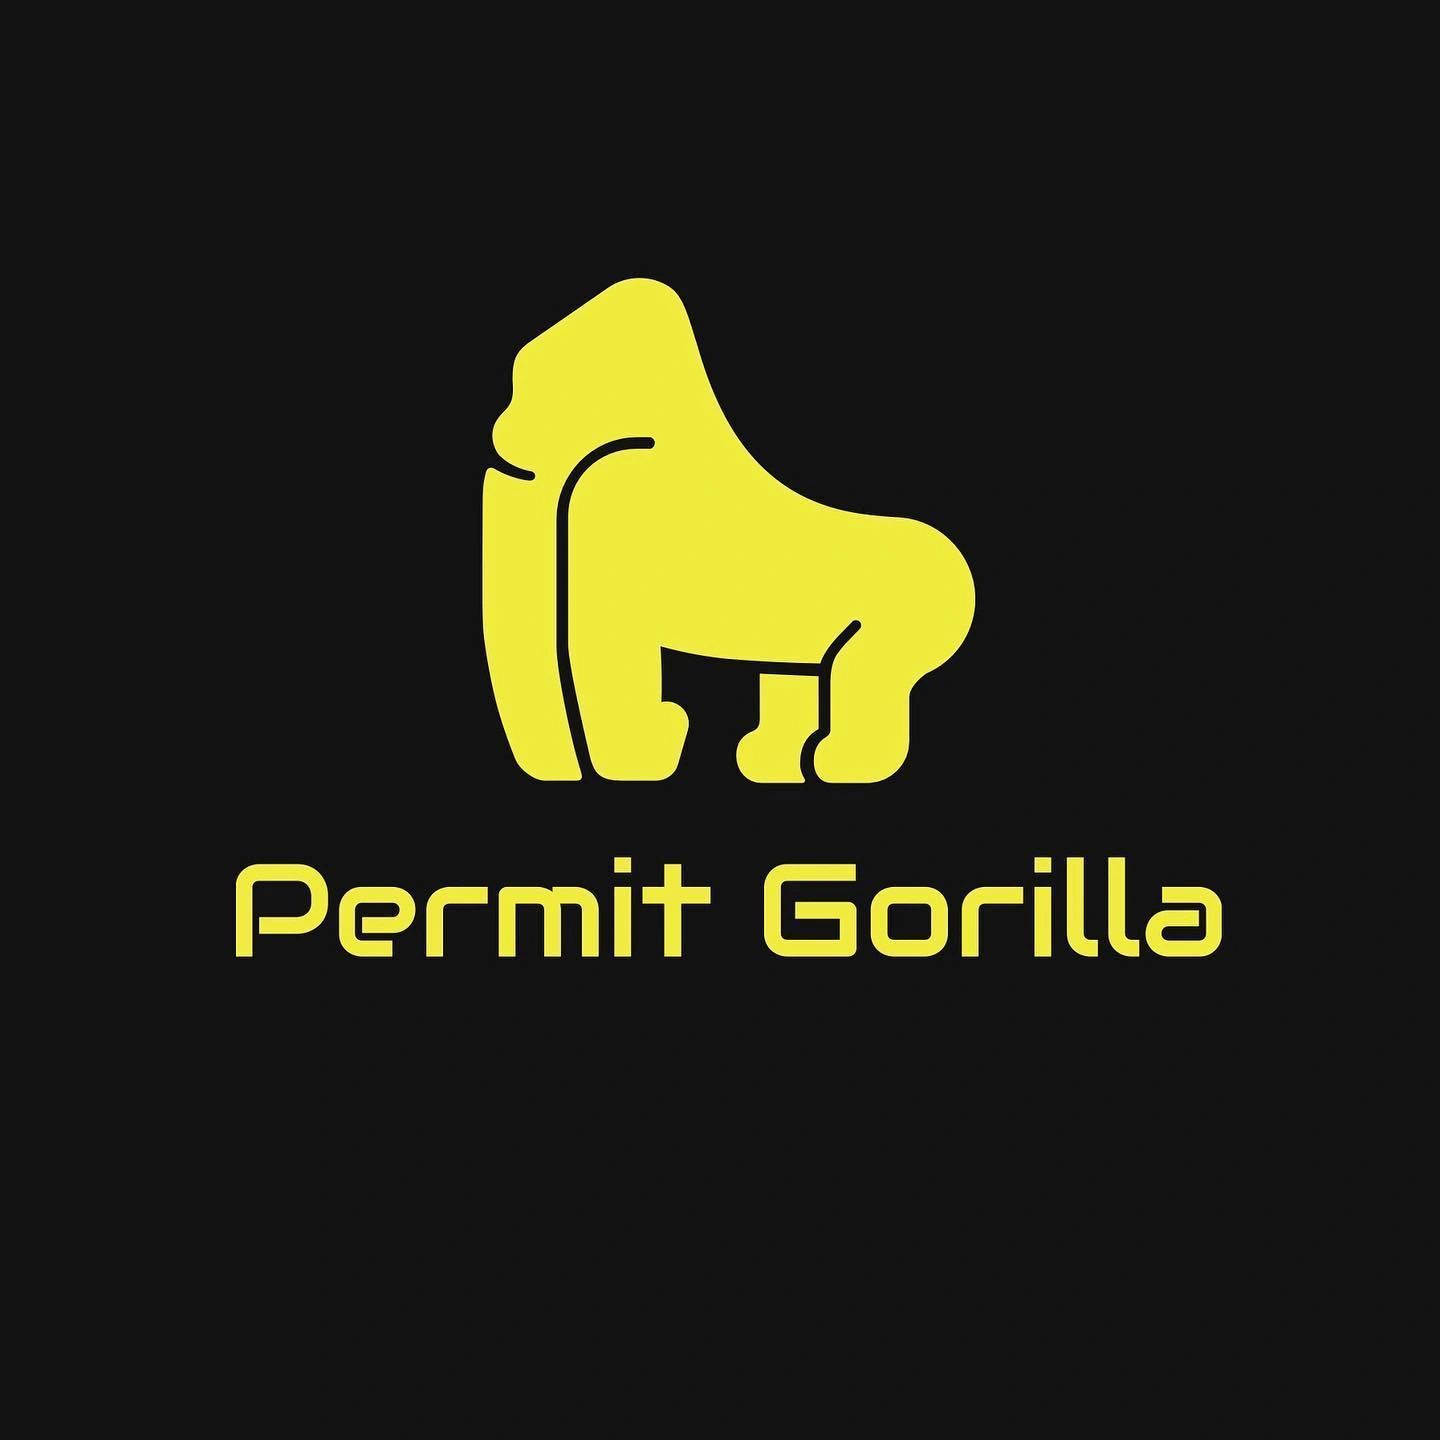 Permit Gorilla App